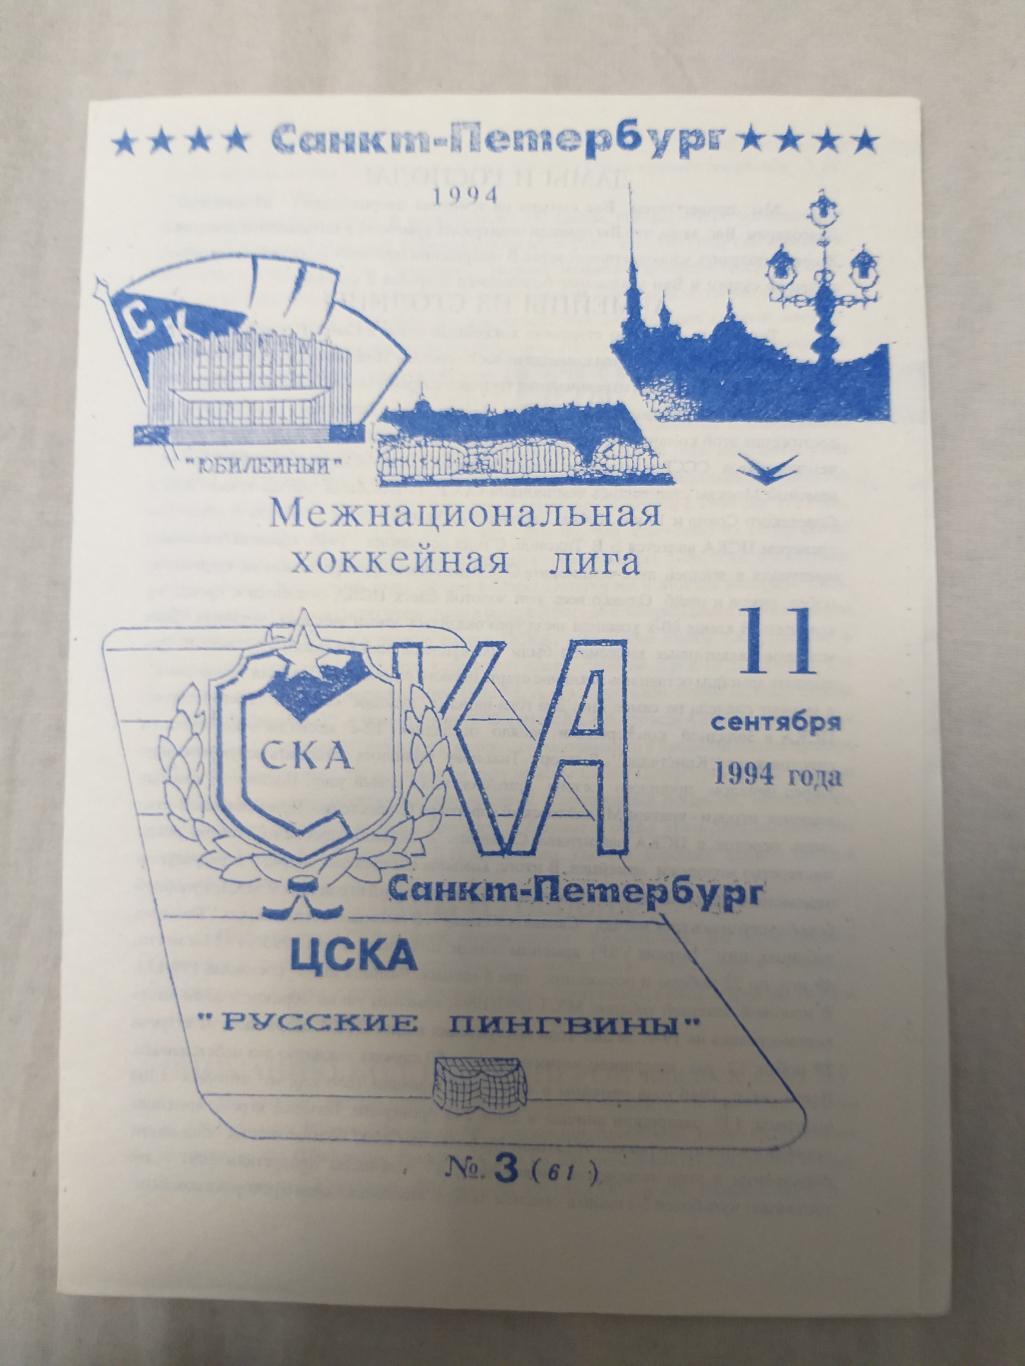 СКА(Санкт-Петербург)-ЦСКА 11.09.1994 второй вид